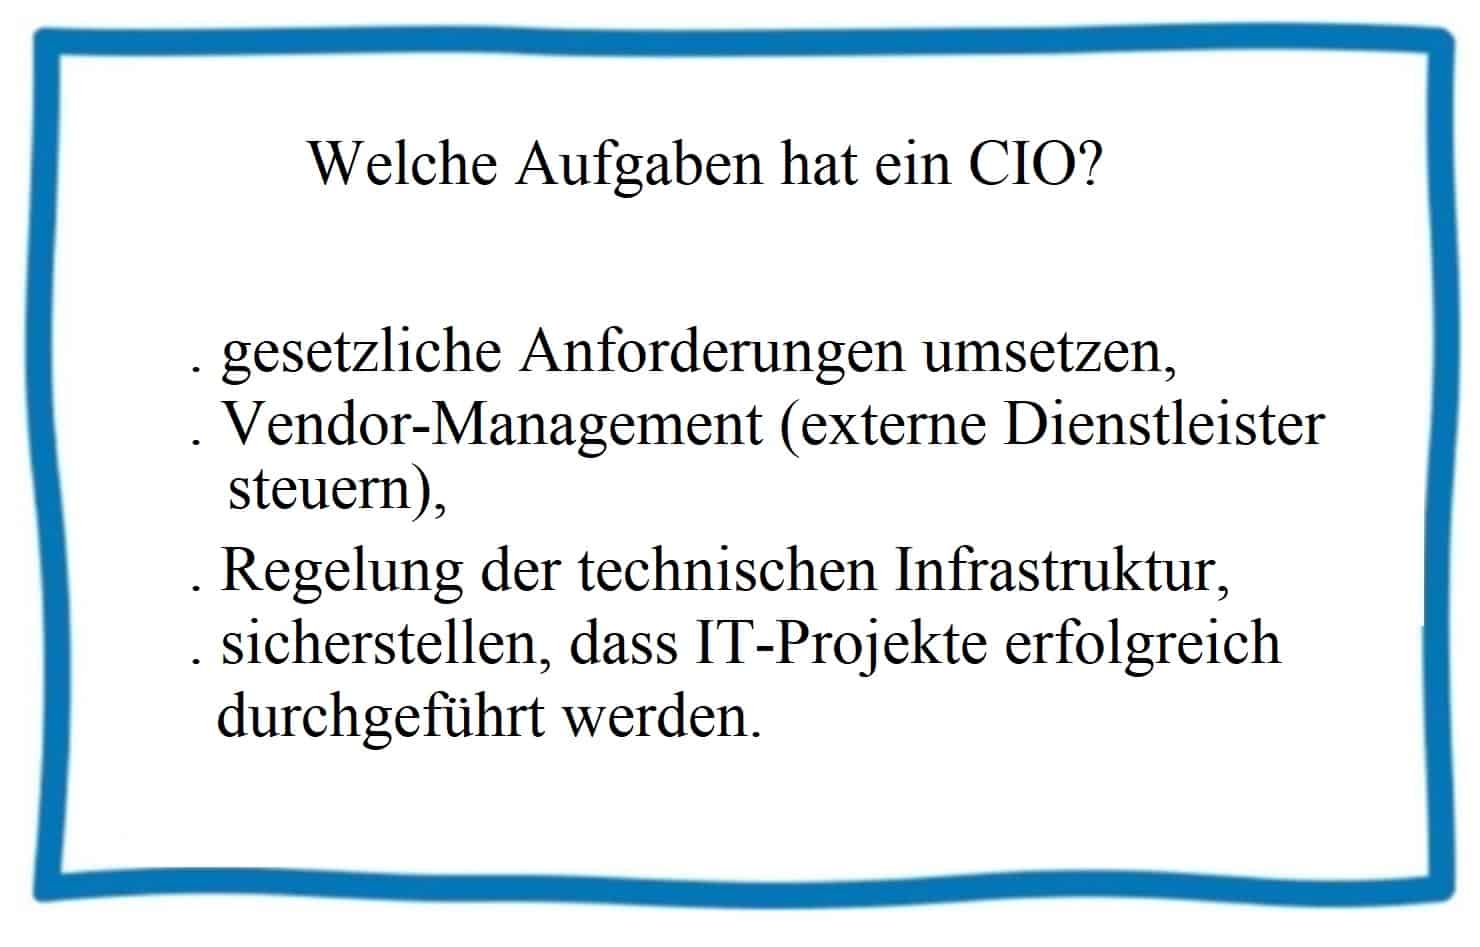 CIO Chief Information Officer Aufgaben